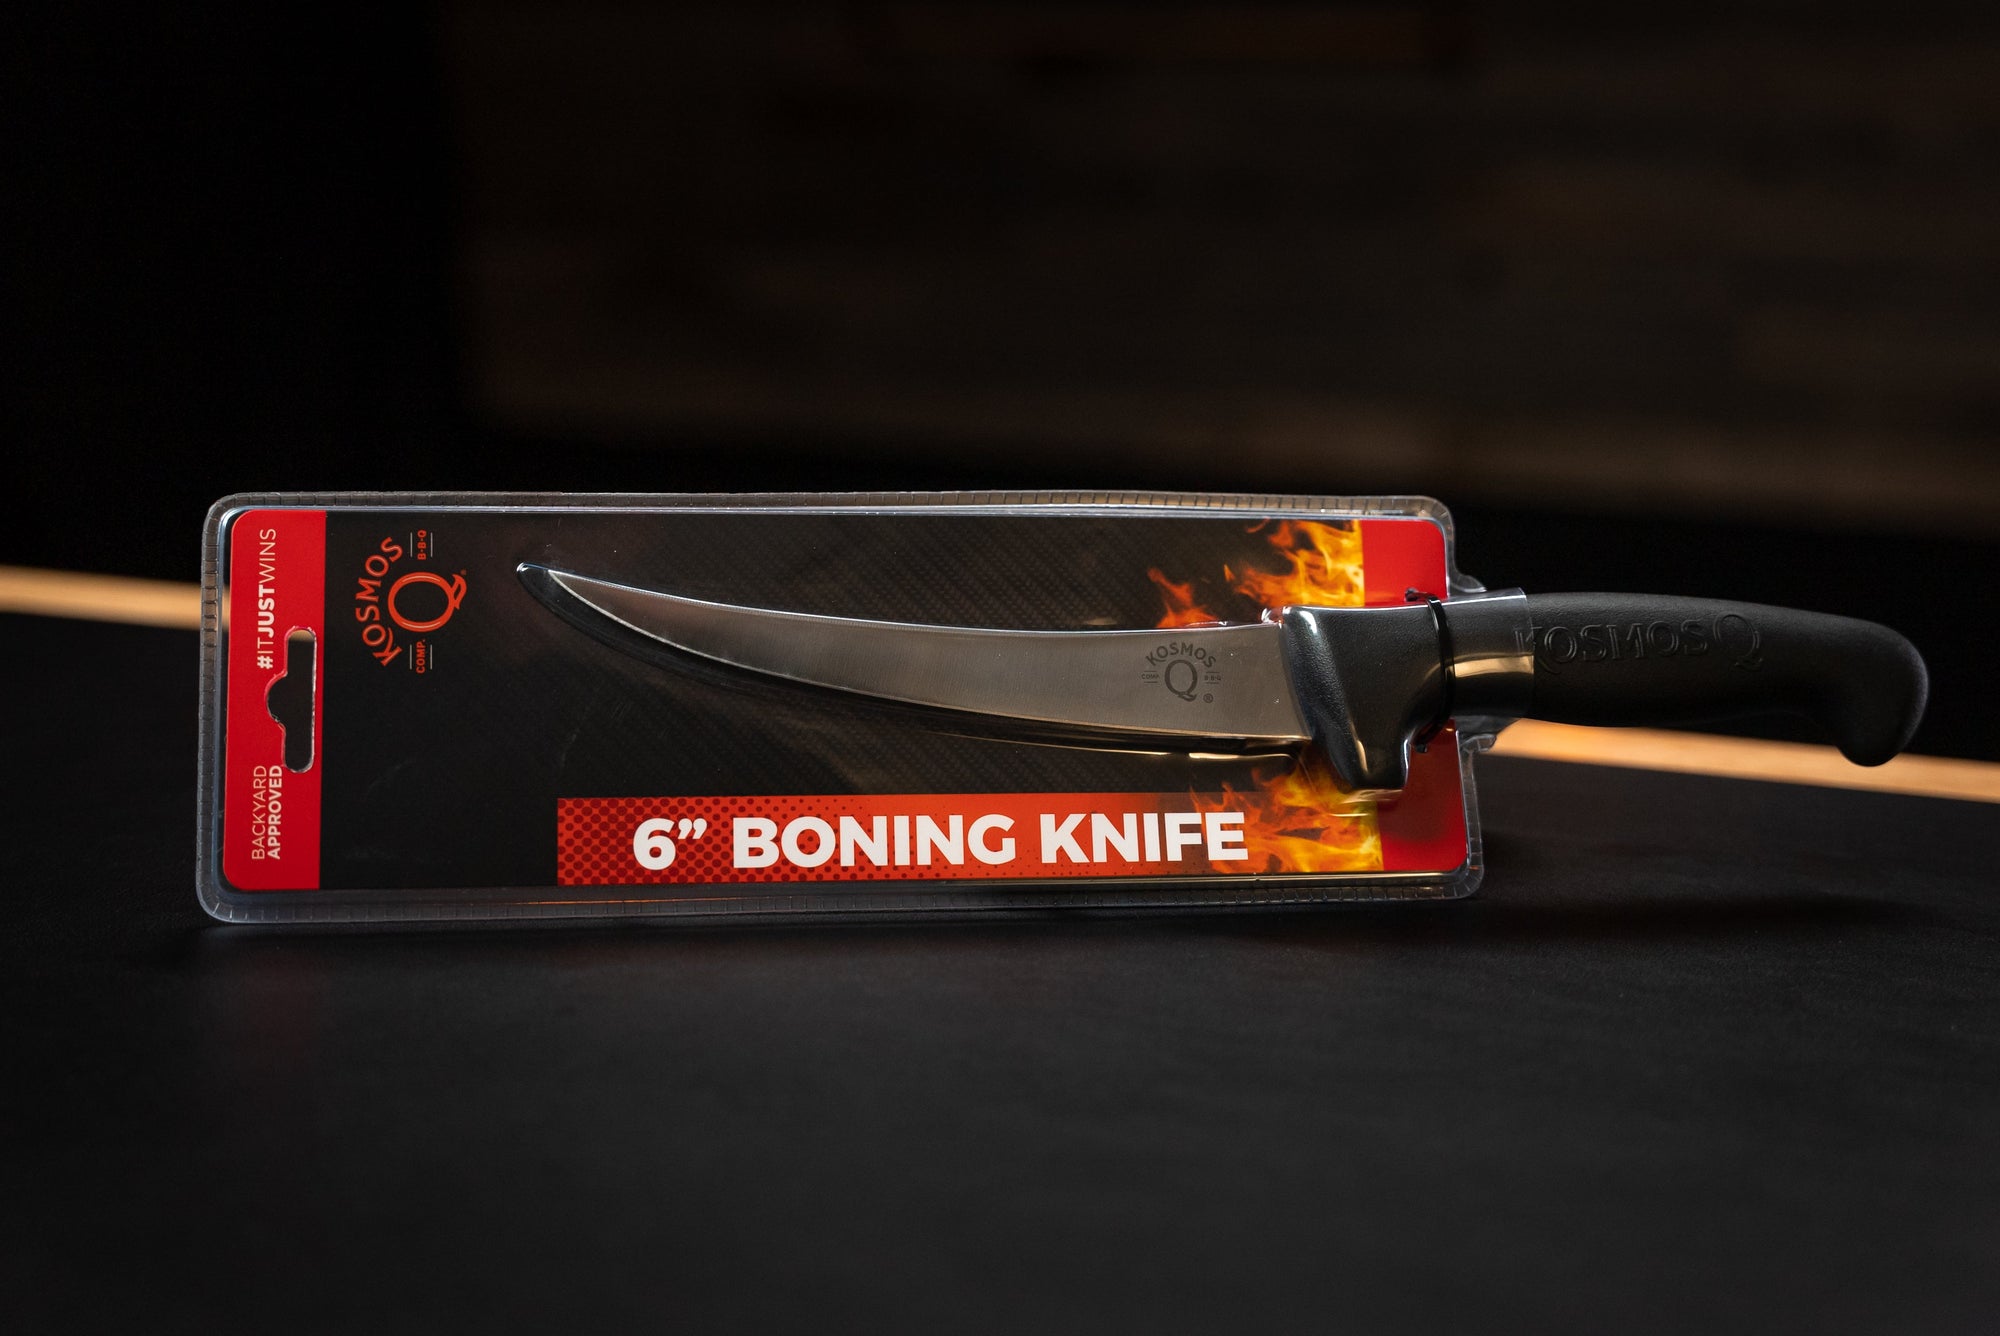 Kosmos Q 6 inch boning knife